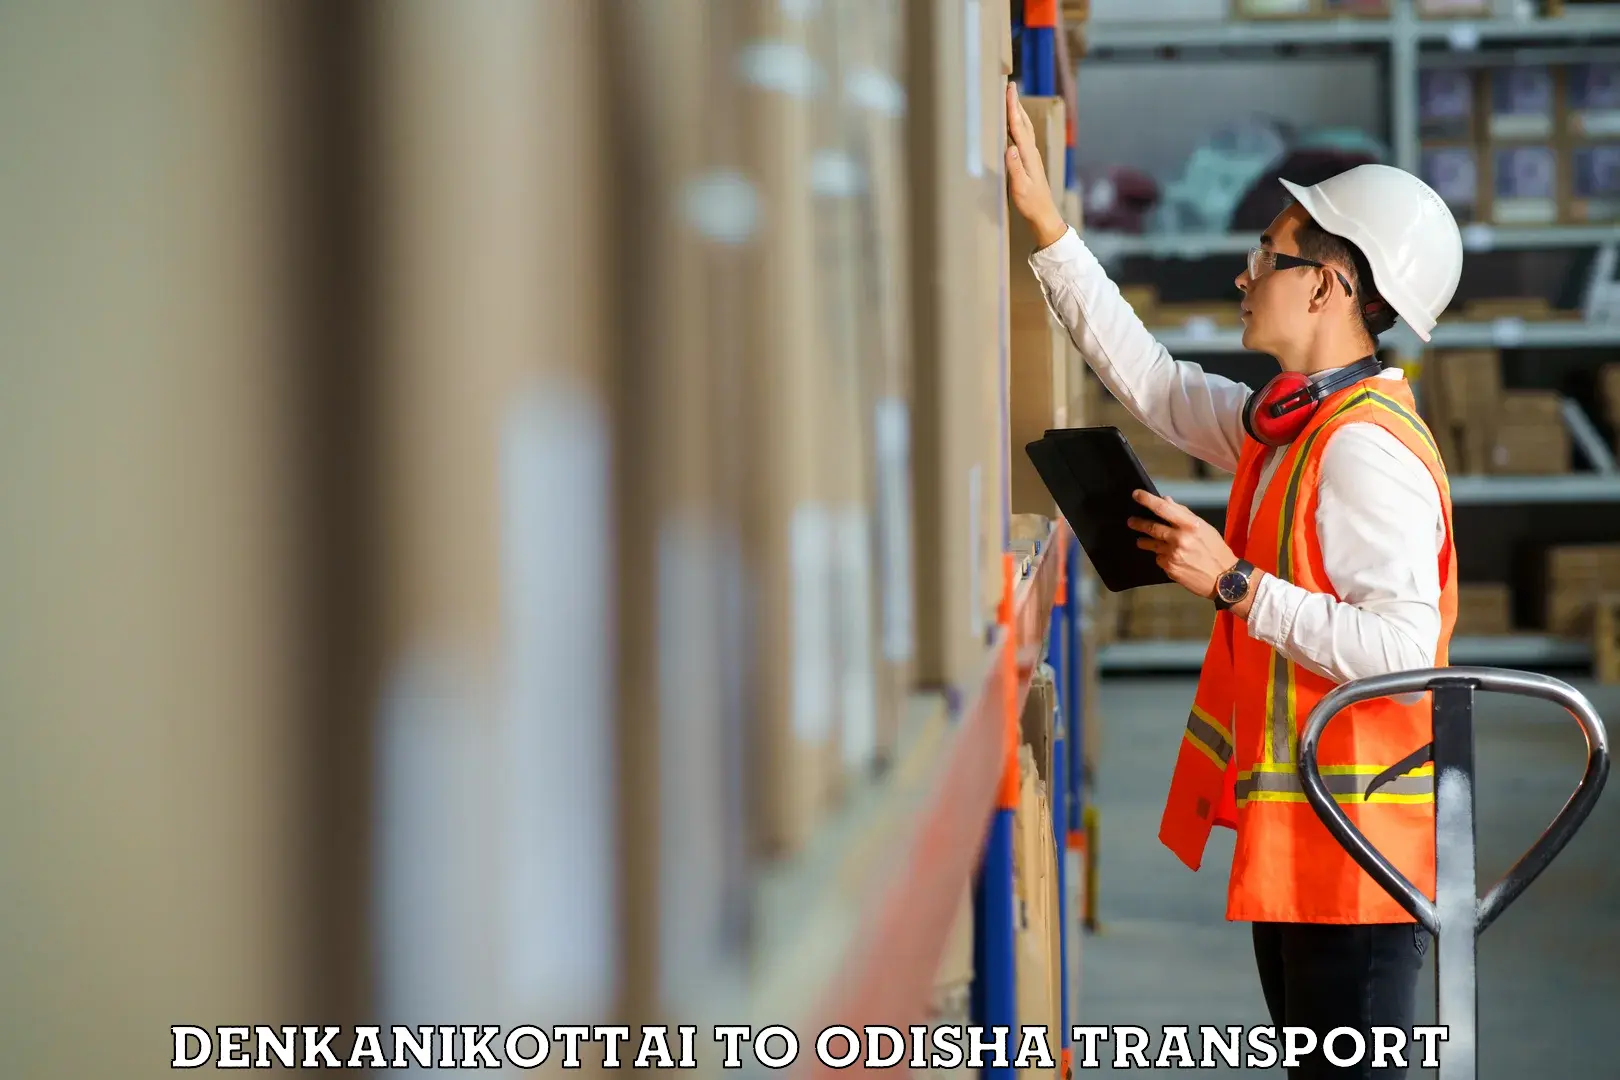 Container transportation services Denkanikottai to Kamakhyanagar